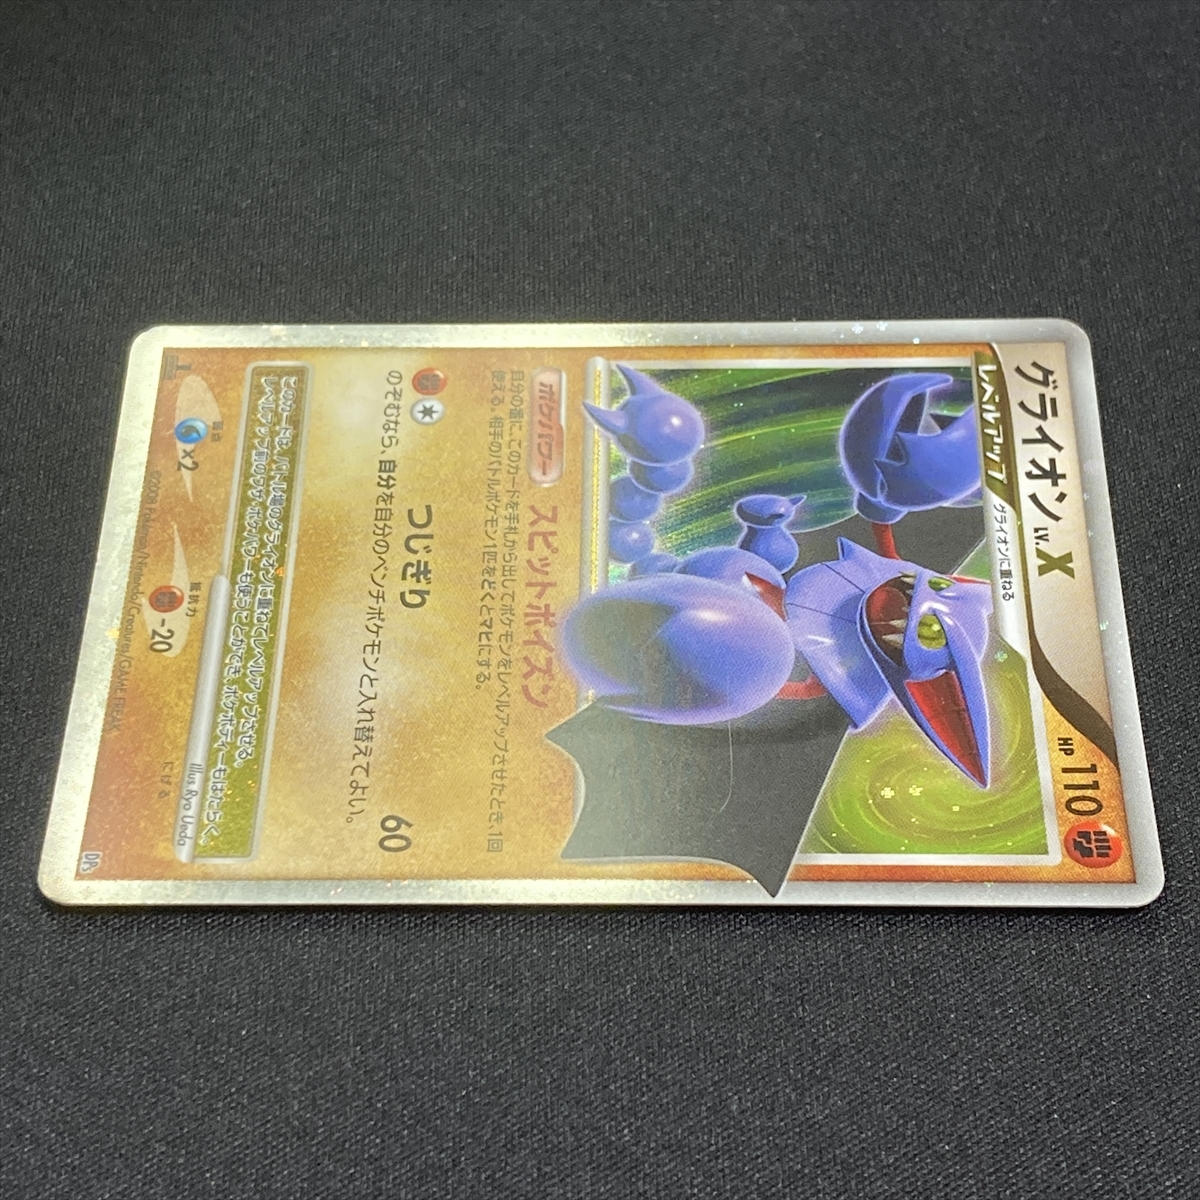 Gliscor Lv X Dp5 Pokemon Card Japanese 08 1st Edition ポケモン カード グライオン ポケカ ポケモンカードゲーム 売買されたオークション情報 Yahooの商品情報をアーカイブ公開 オークファン Aucfan Com